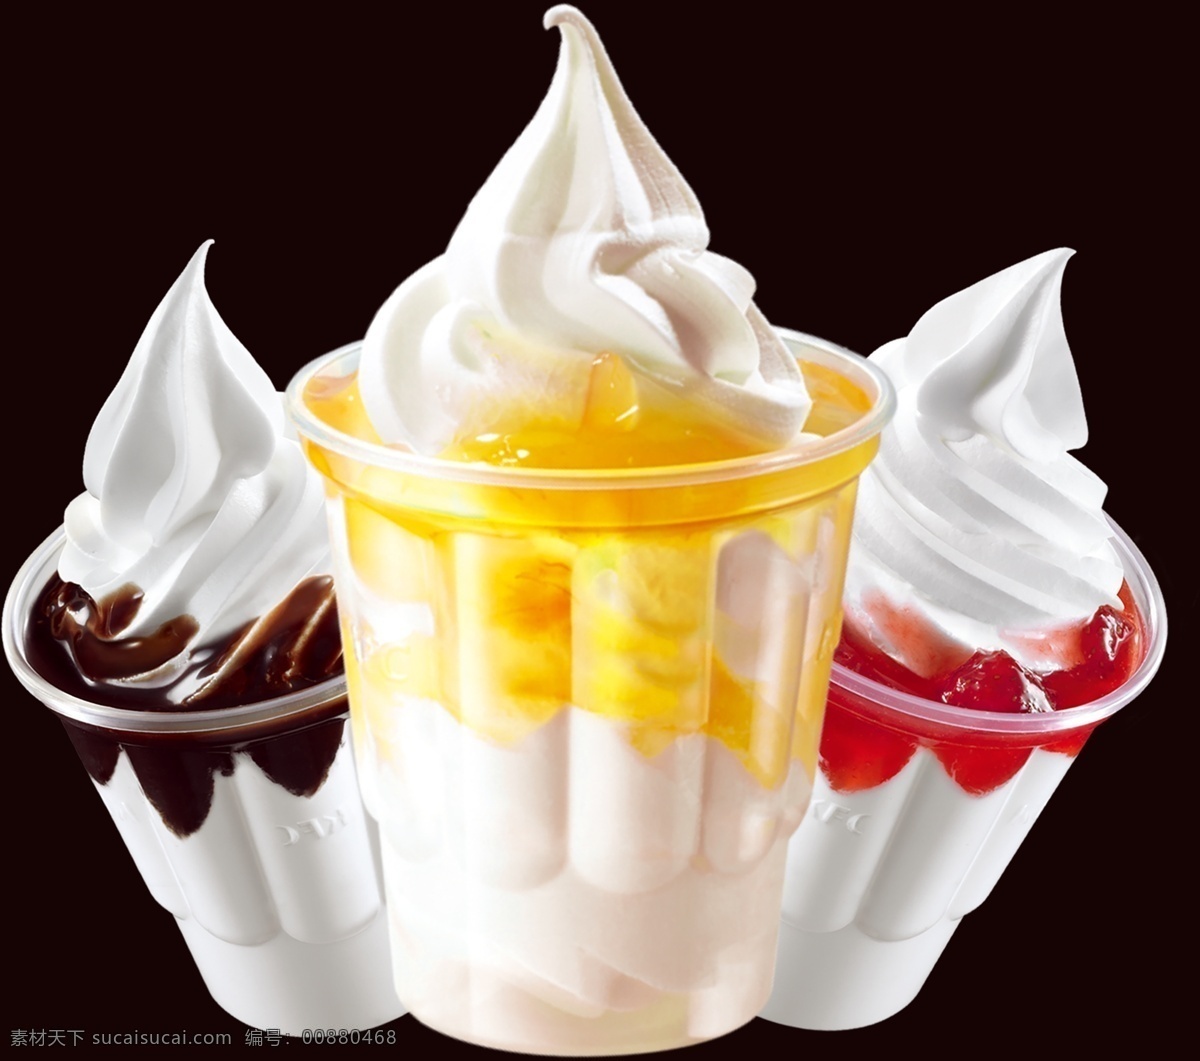 冰棒 冰淇林 冰激棱 雪糕 创意雪糕海报 冰淇凌广告 三星图片类